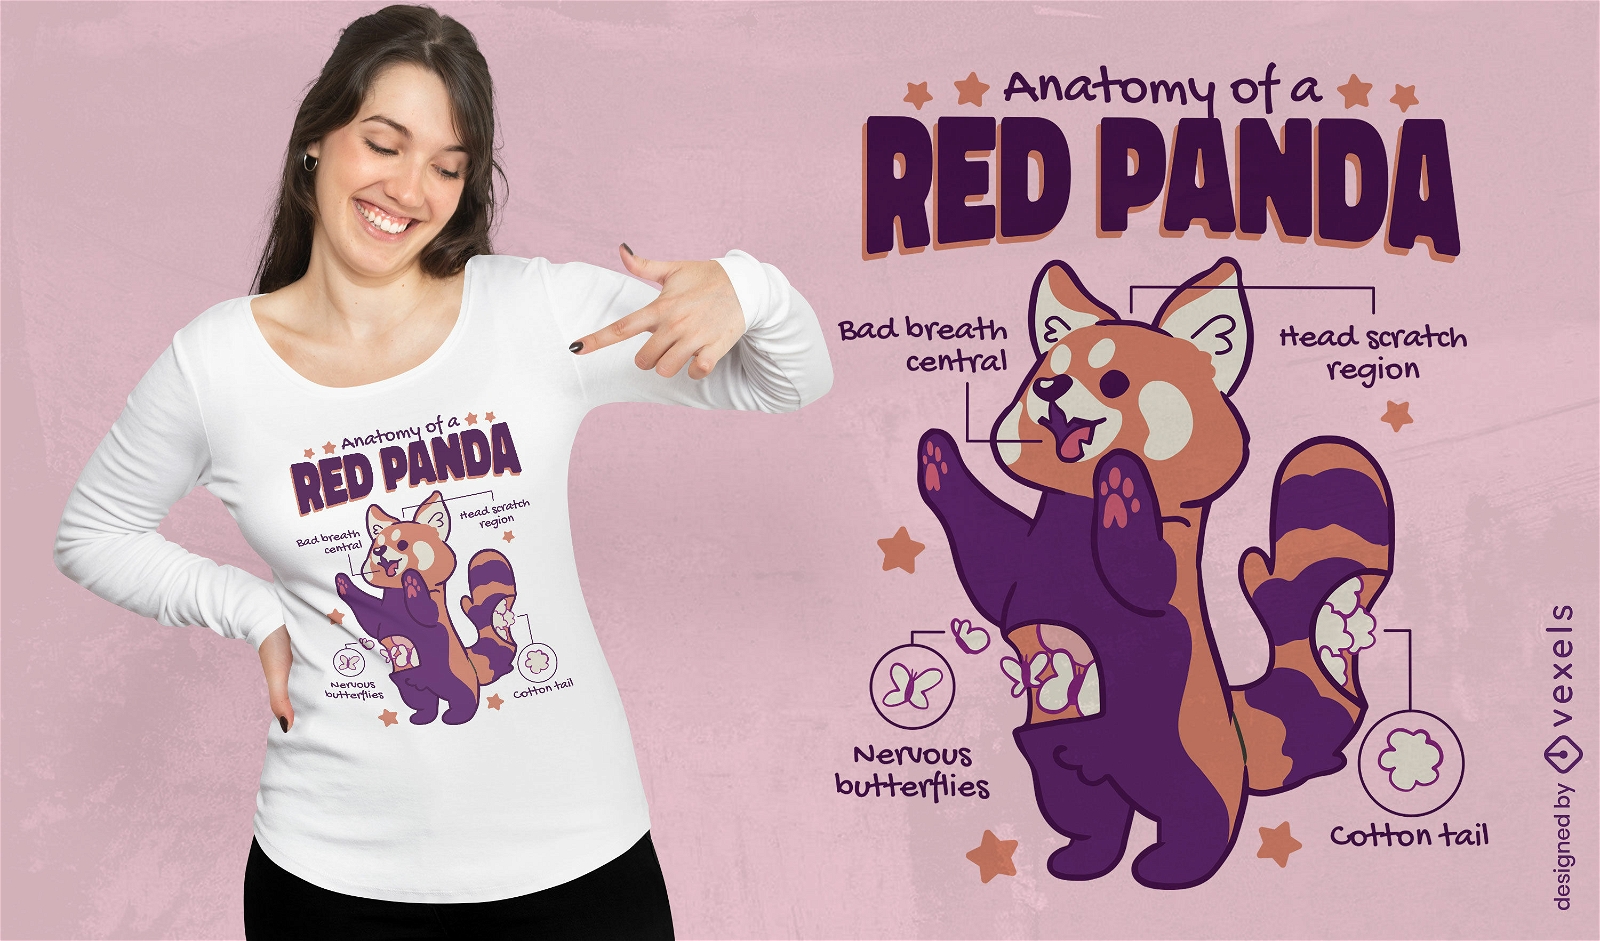 Dise?o de camiseta de anatom?a de panda rojo.